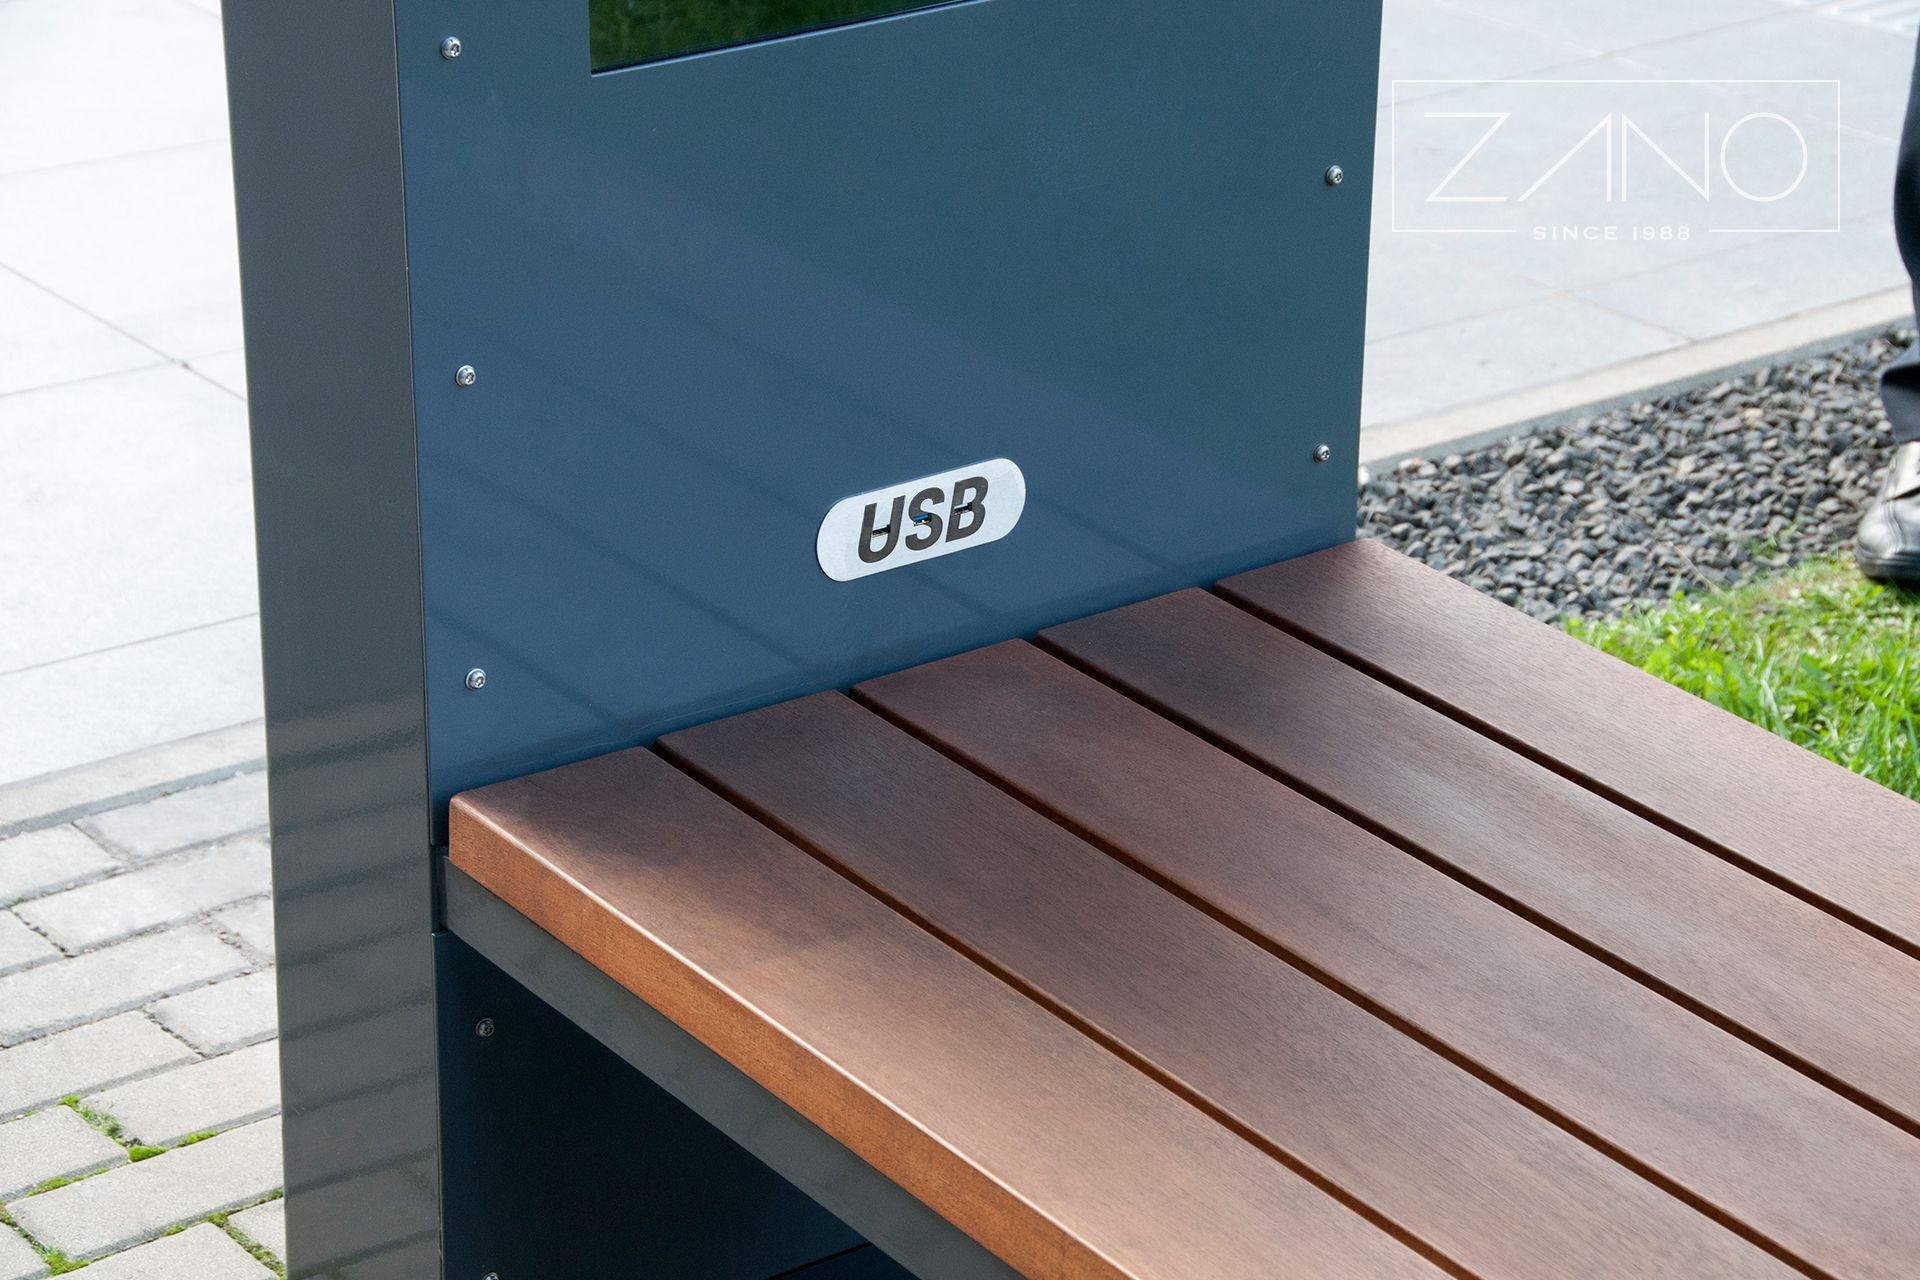 Panchina solare con porte di ricarica USB